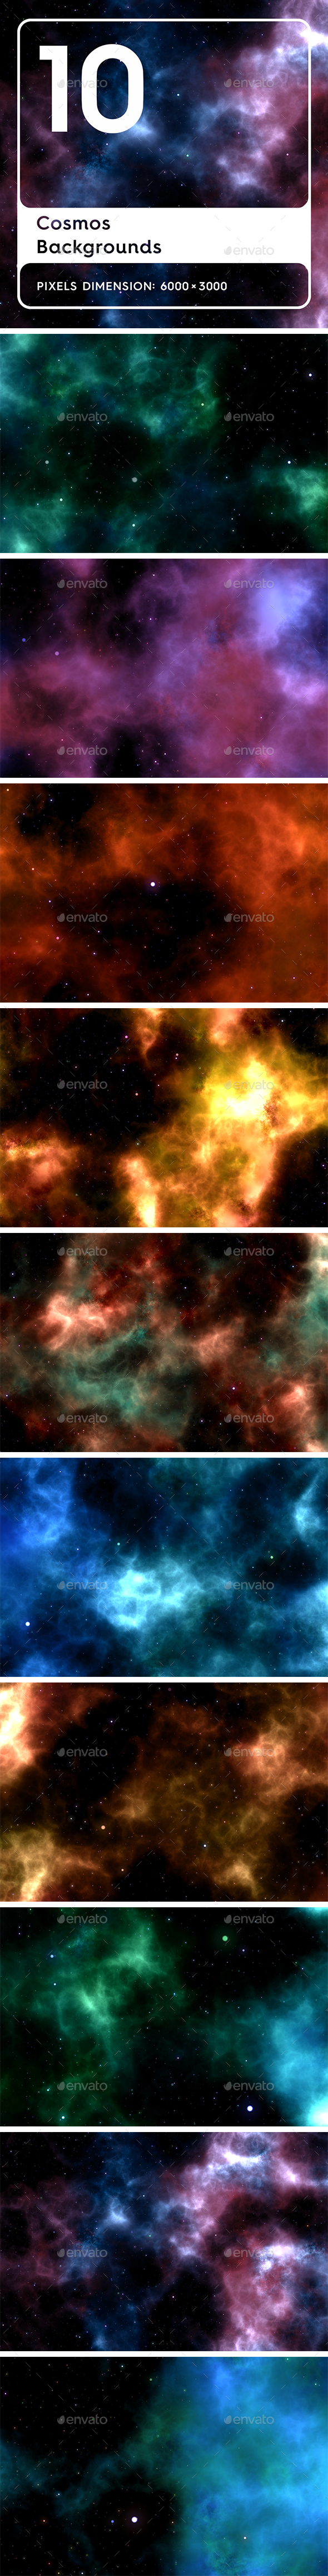 20 Cosmos Backgrounds - 3Docean 23926824